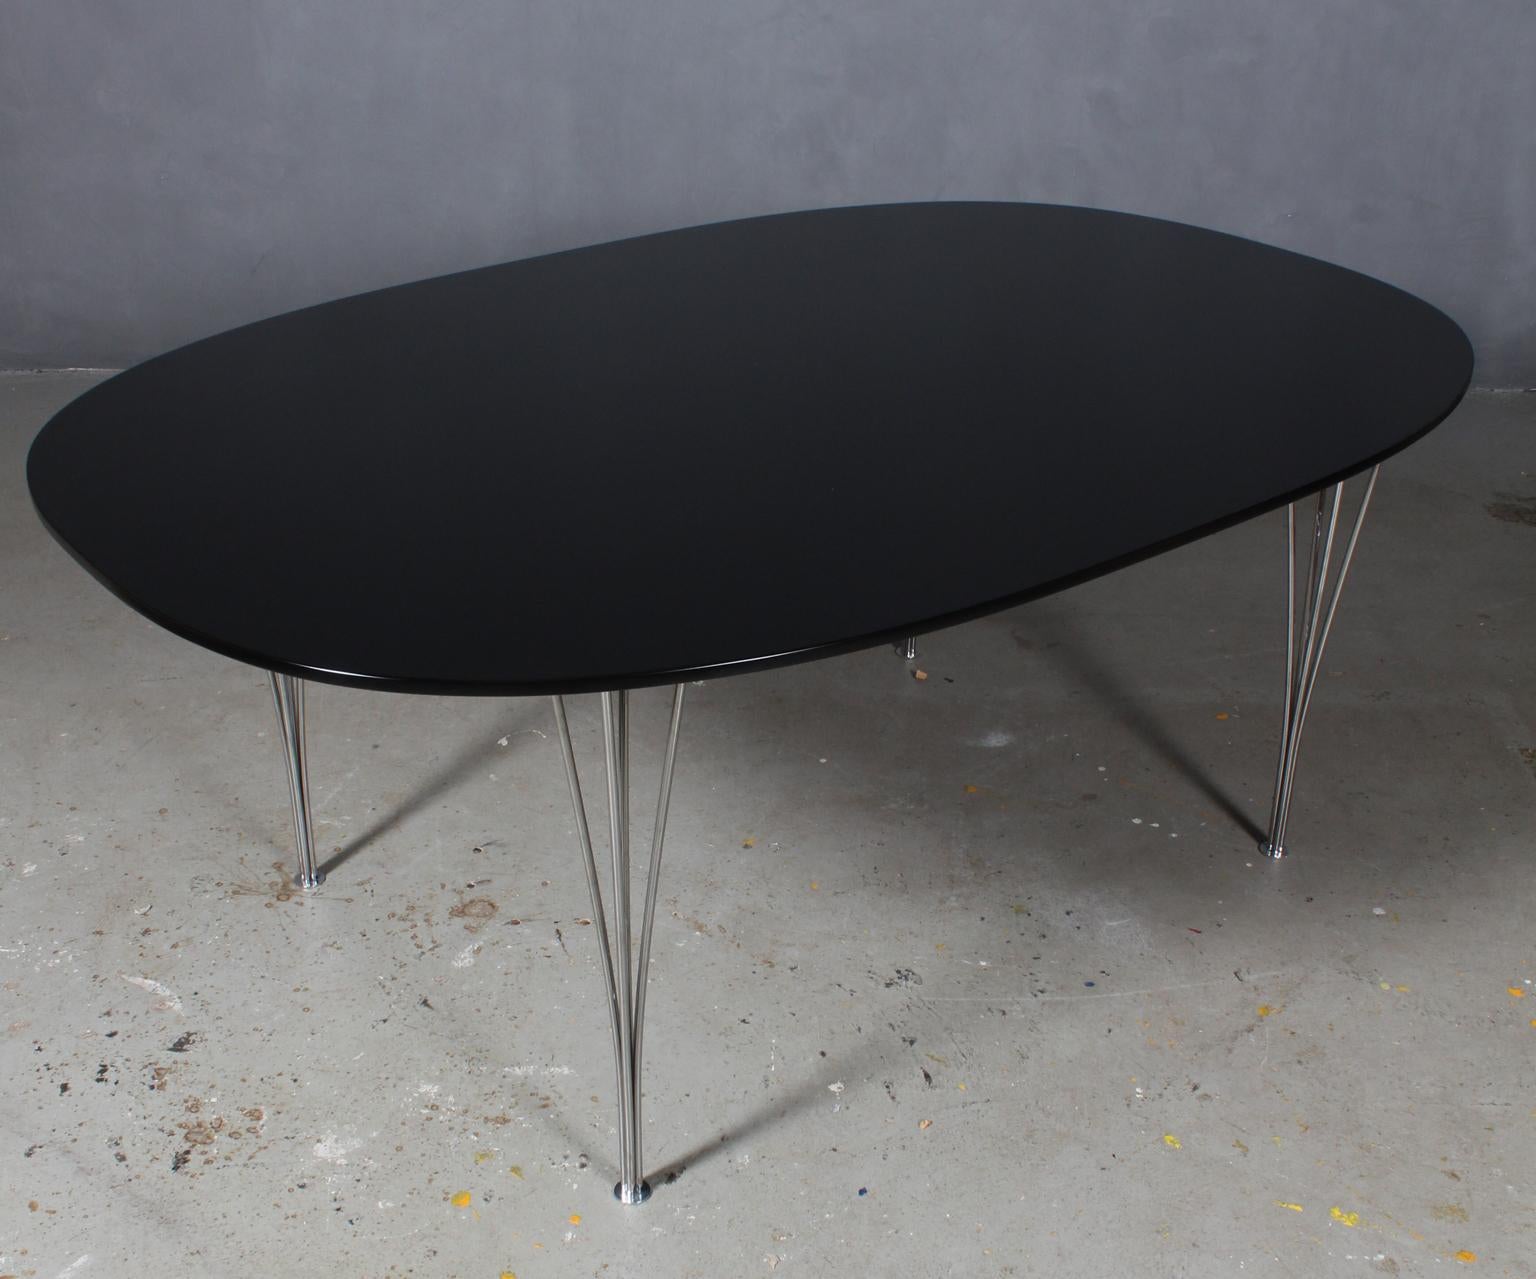 Piet Hein & Bruno Mathsson ellipse dining table new laquererd black.

Legs in chromed steel.

Made by Fritz Hansen.
  